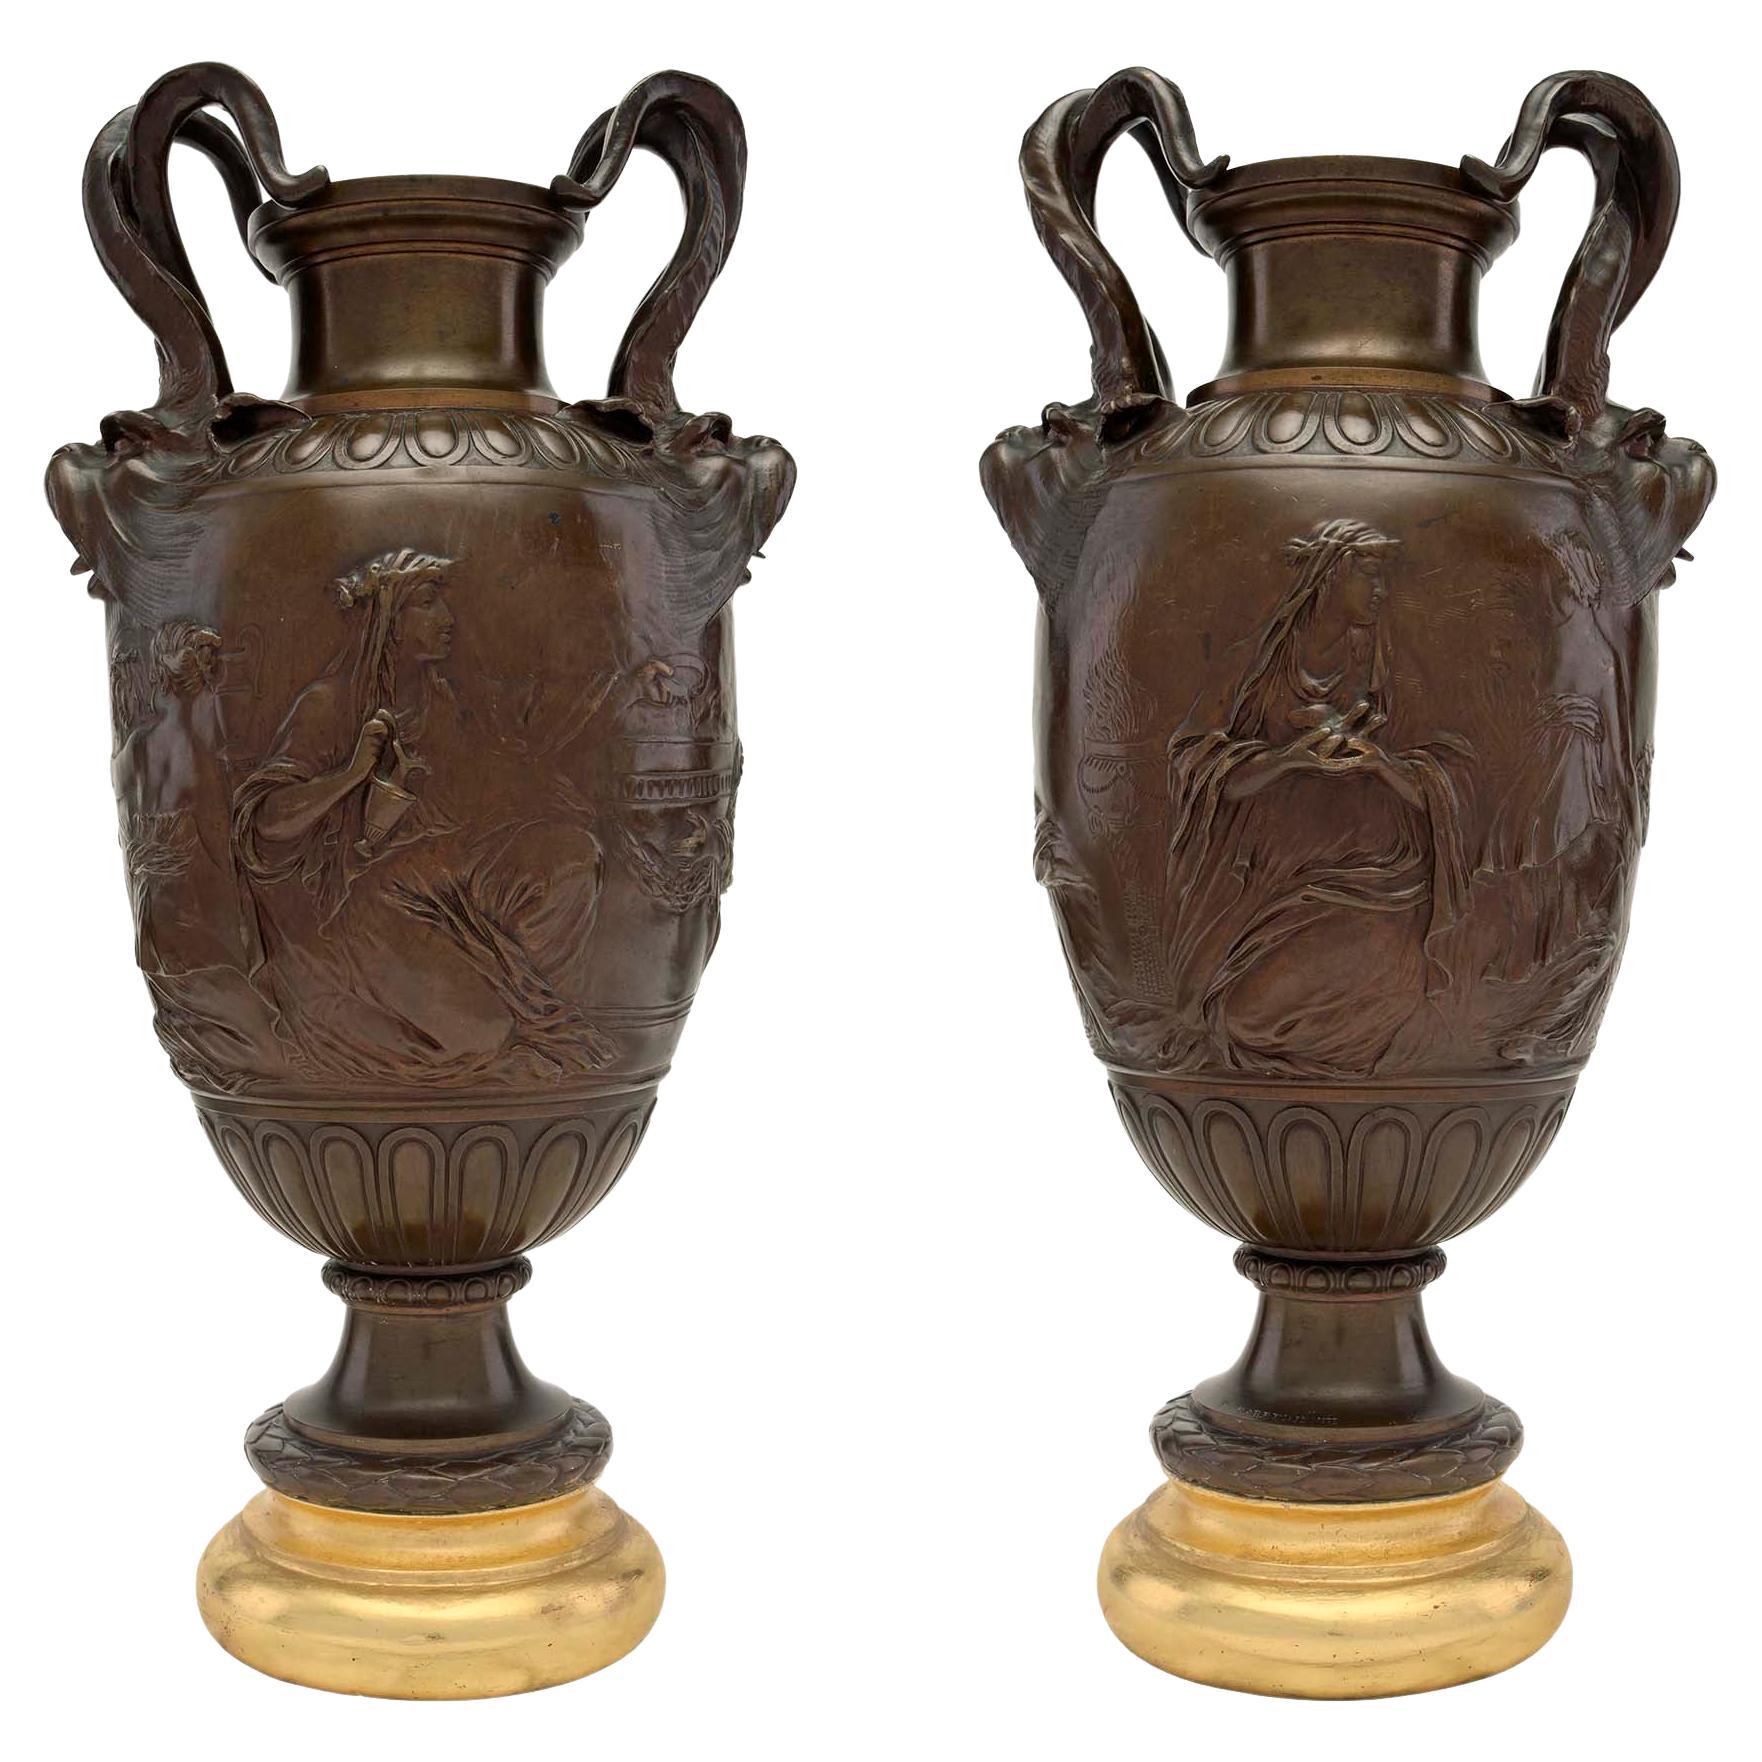 Paire d'urnes françaises de style Renaissance du 19ème siècle en bronze patiné et bois doré